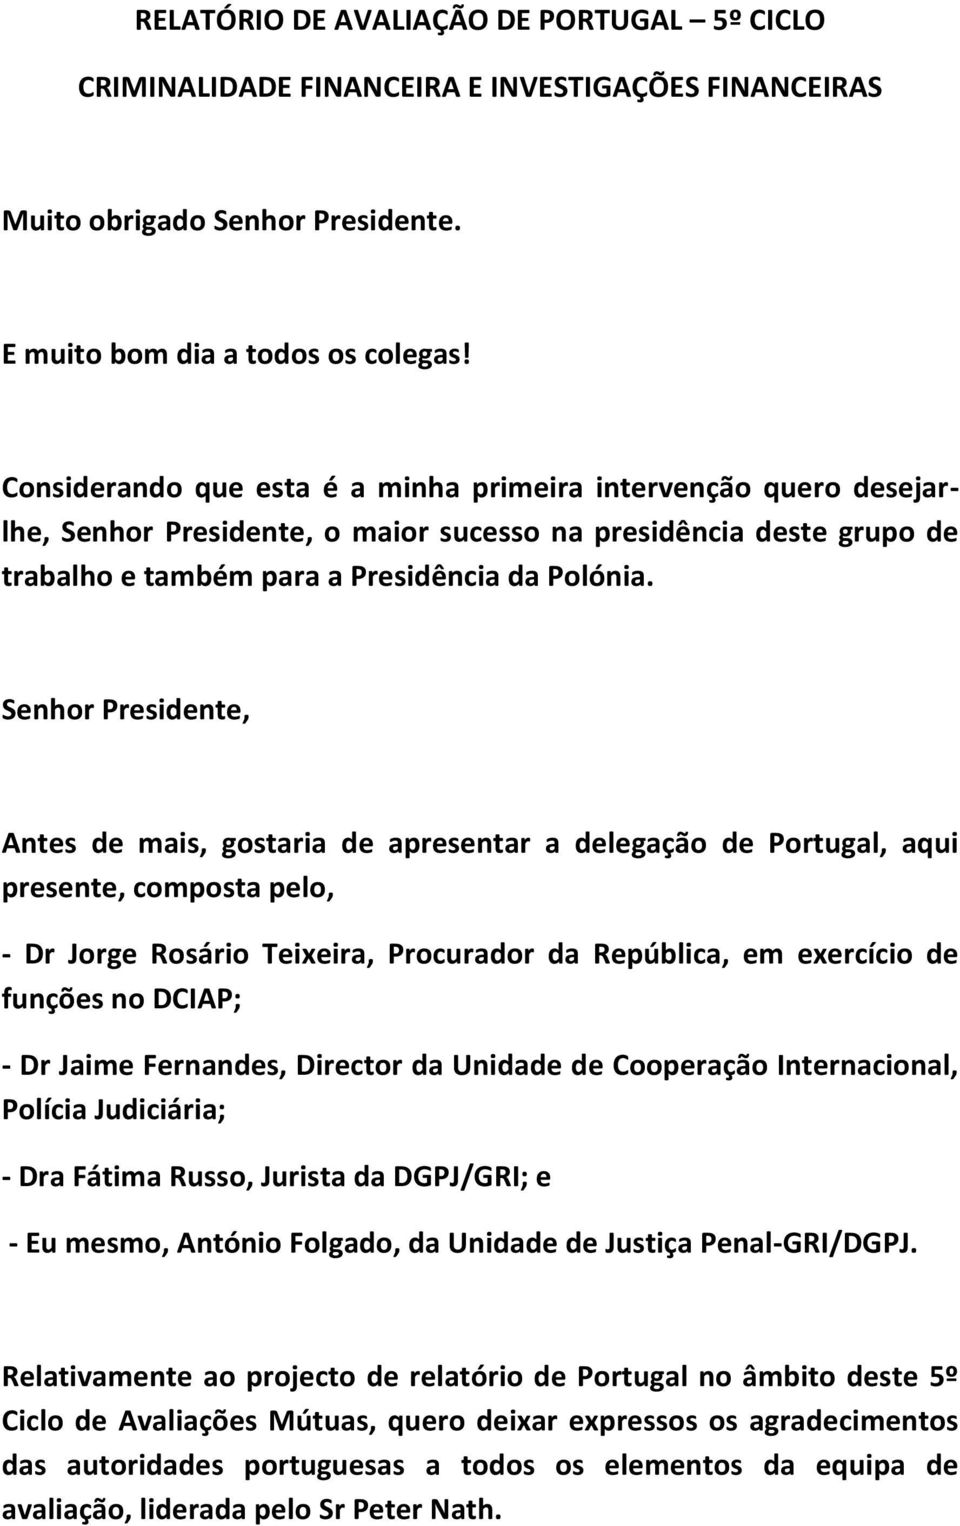 Senhor Presidente, Antes de mais, gostaria de apresentar a delegação de Portugal, aqui presente, composta pelo, - Dr Jorge Rosário Teixeira, Procurador da República, em exercício de funções no DCIAP;